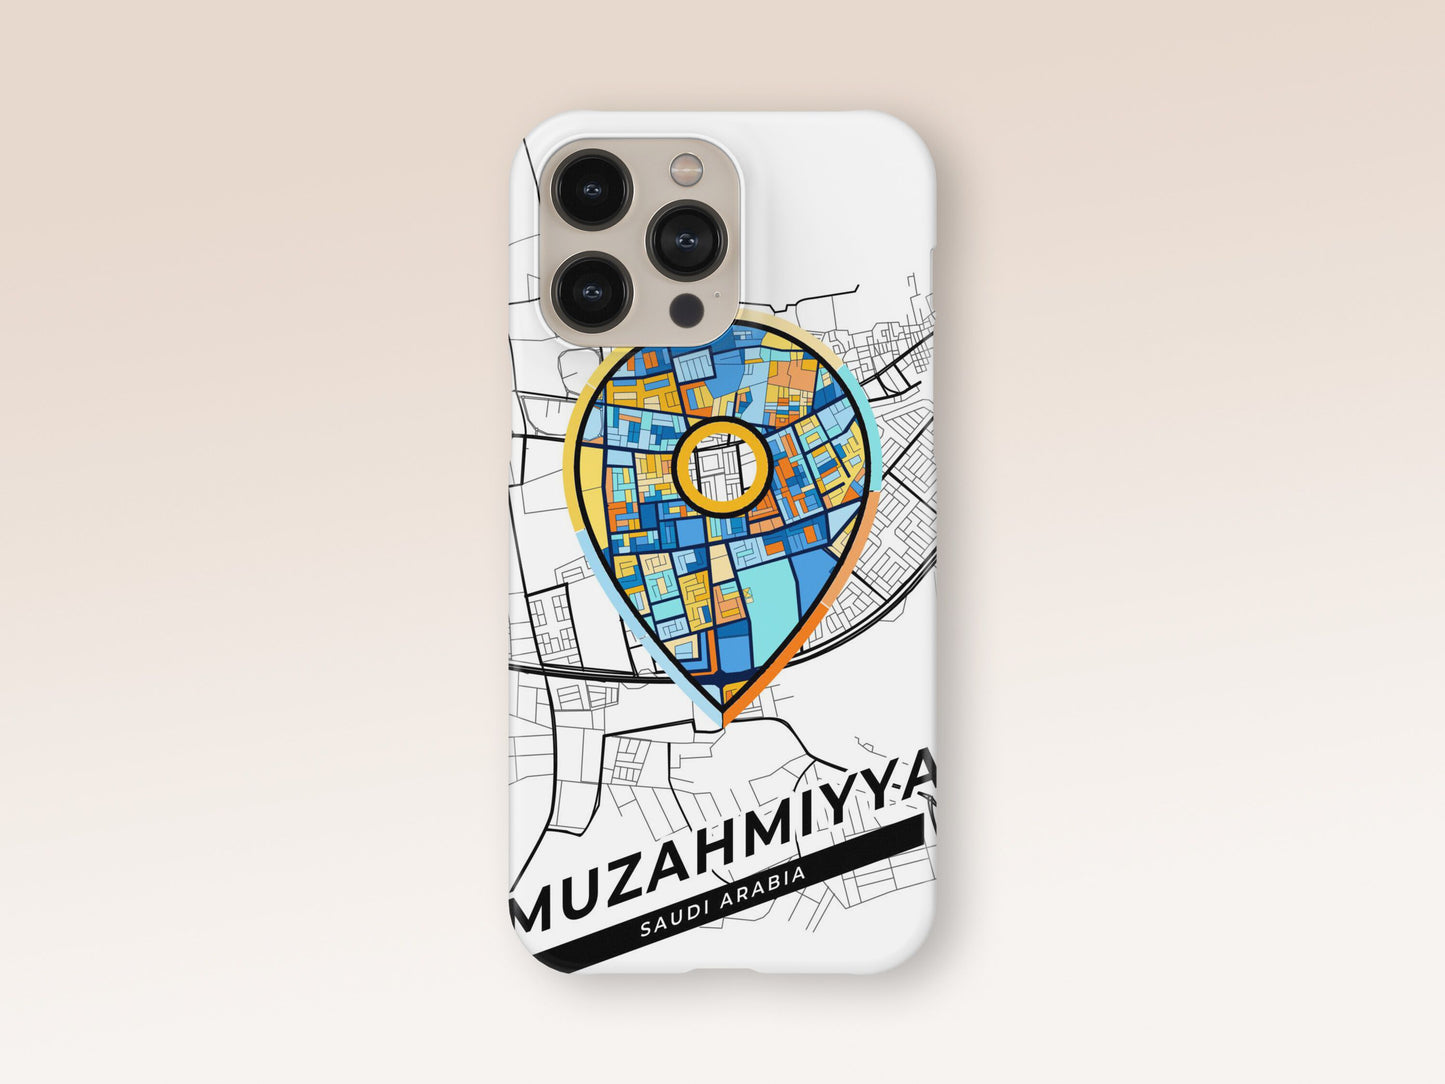 Muzahmiyya Saudi Arabia slim phone case with colorful icon 1